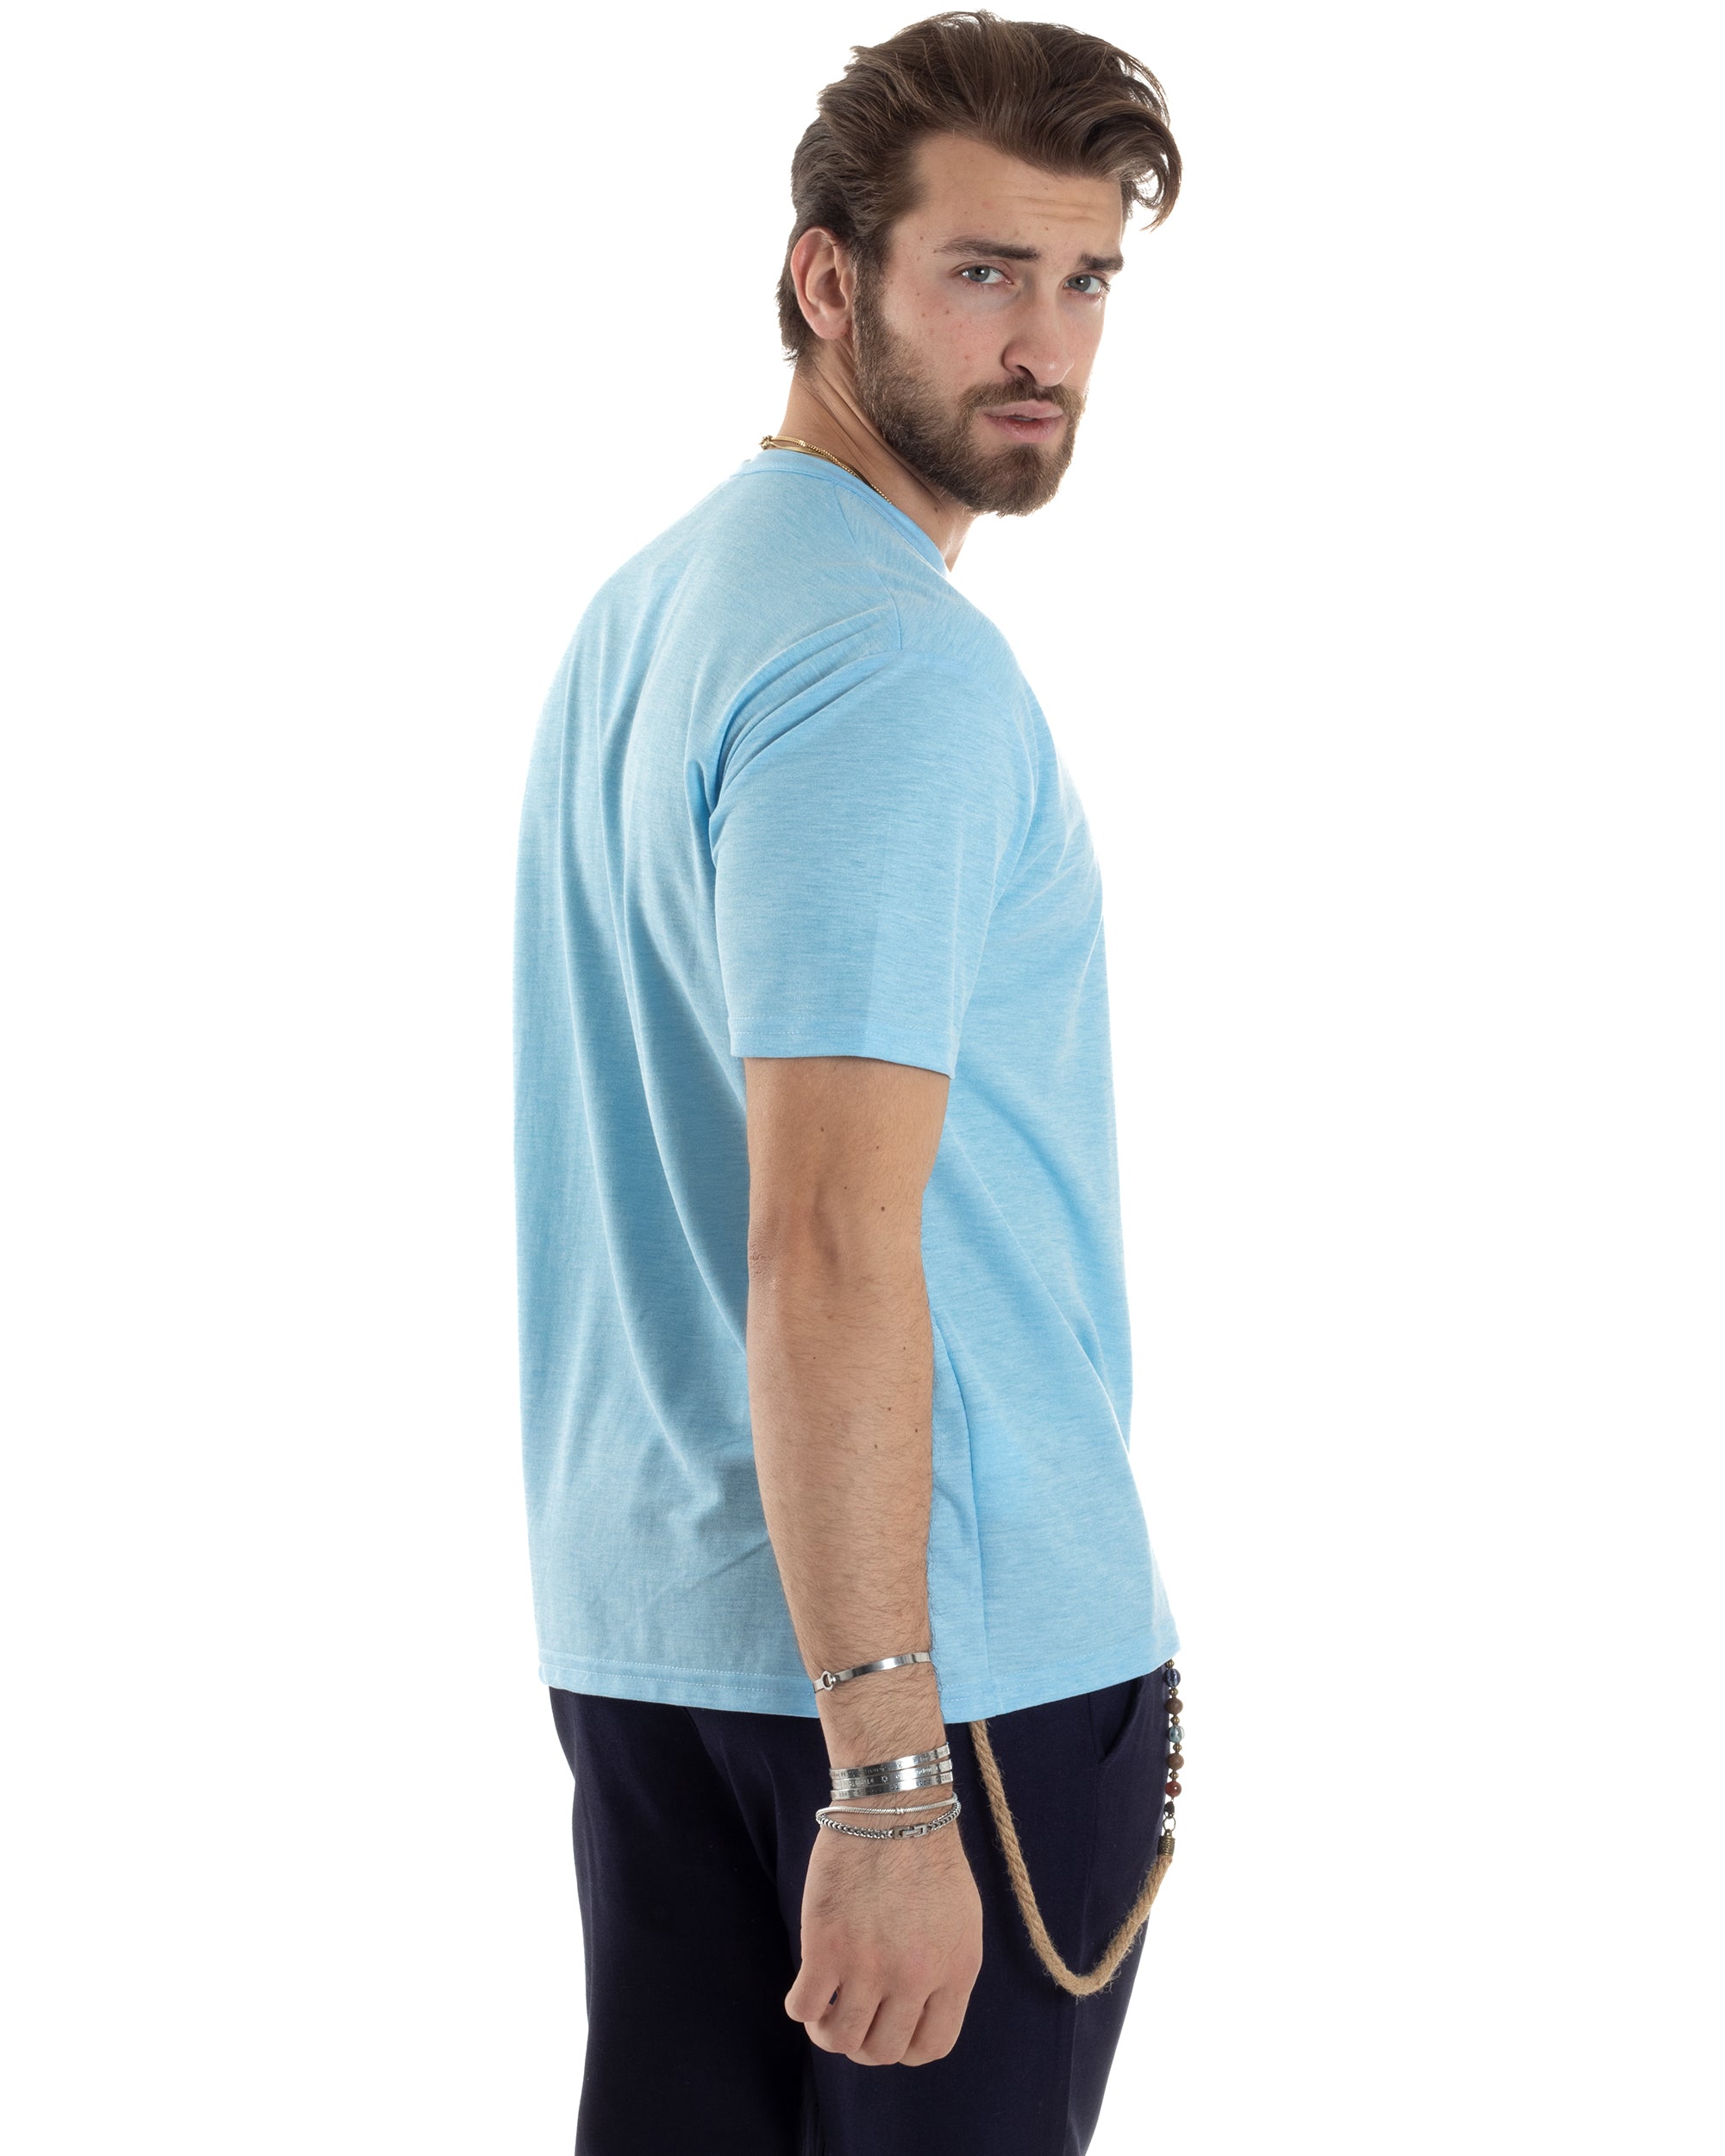 T-shirt Uomo Manica Corta Viscosa Collo Serafino Maglia Con Bottoni Casual Azzurro GIOSAL-TS3037A